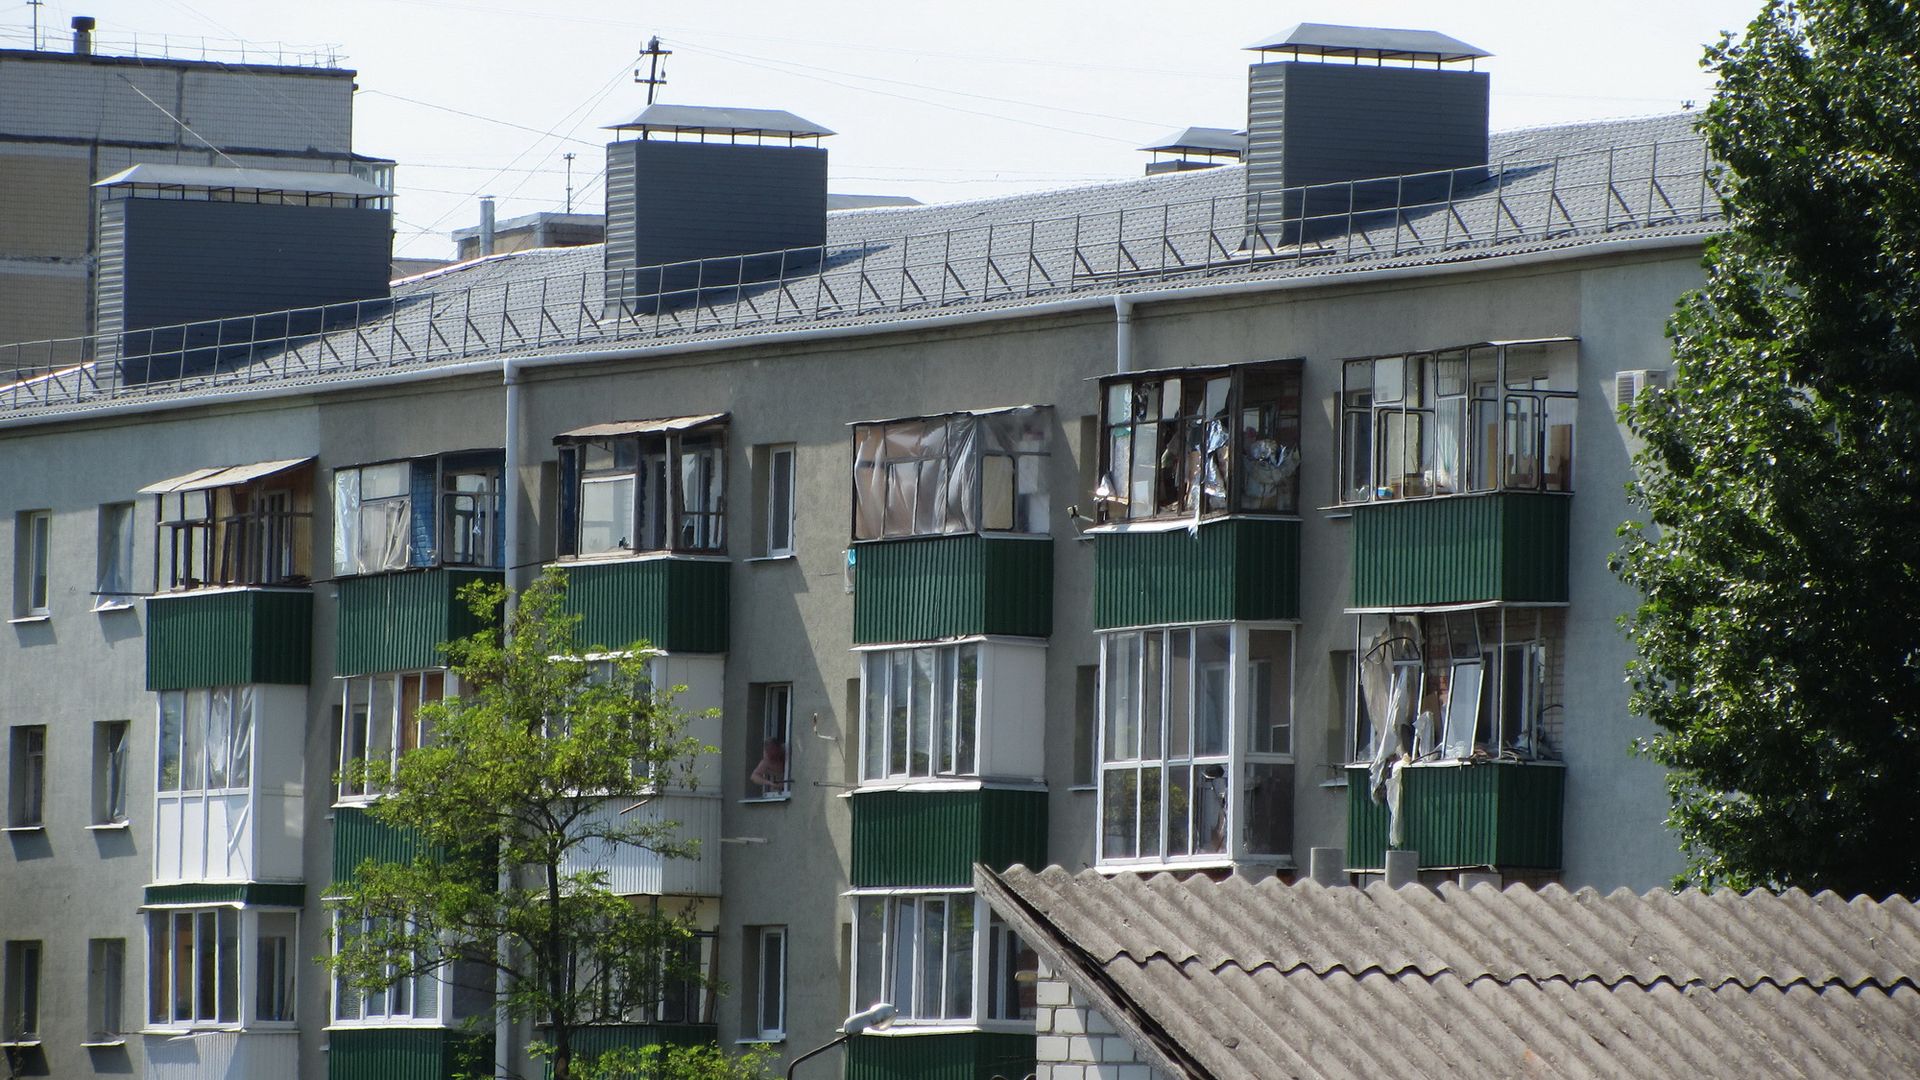 Повреждены верхние этажи. Белгород, 03.07.2022 г.